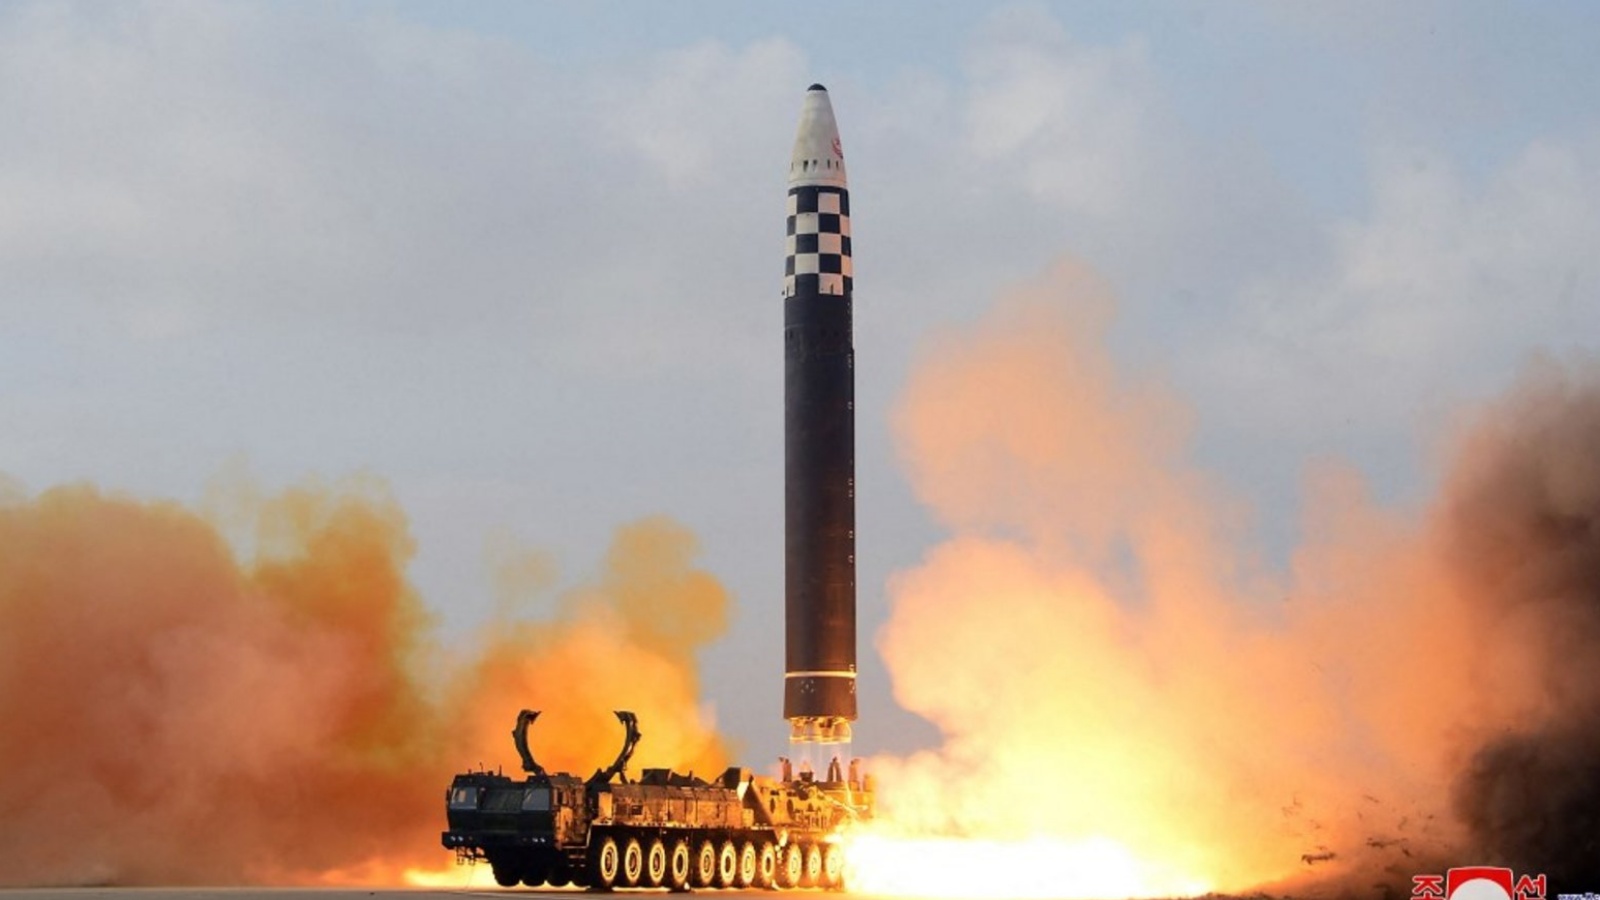 كوريا الشمالية تطلق صاروخاً بالستياً غير محدد (تعبيرية) 